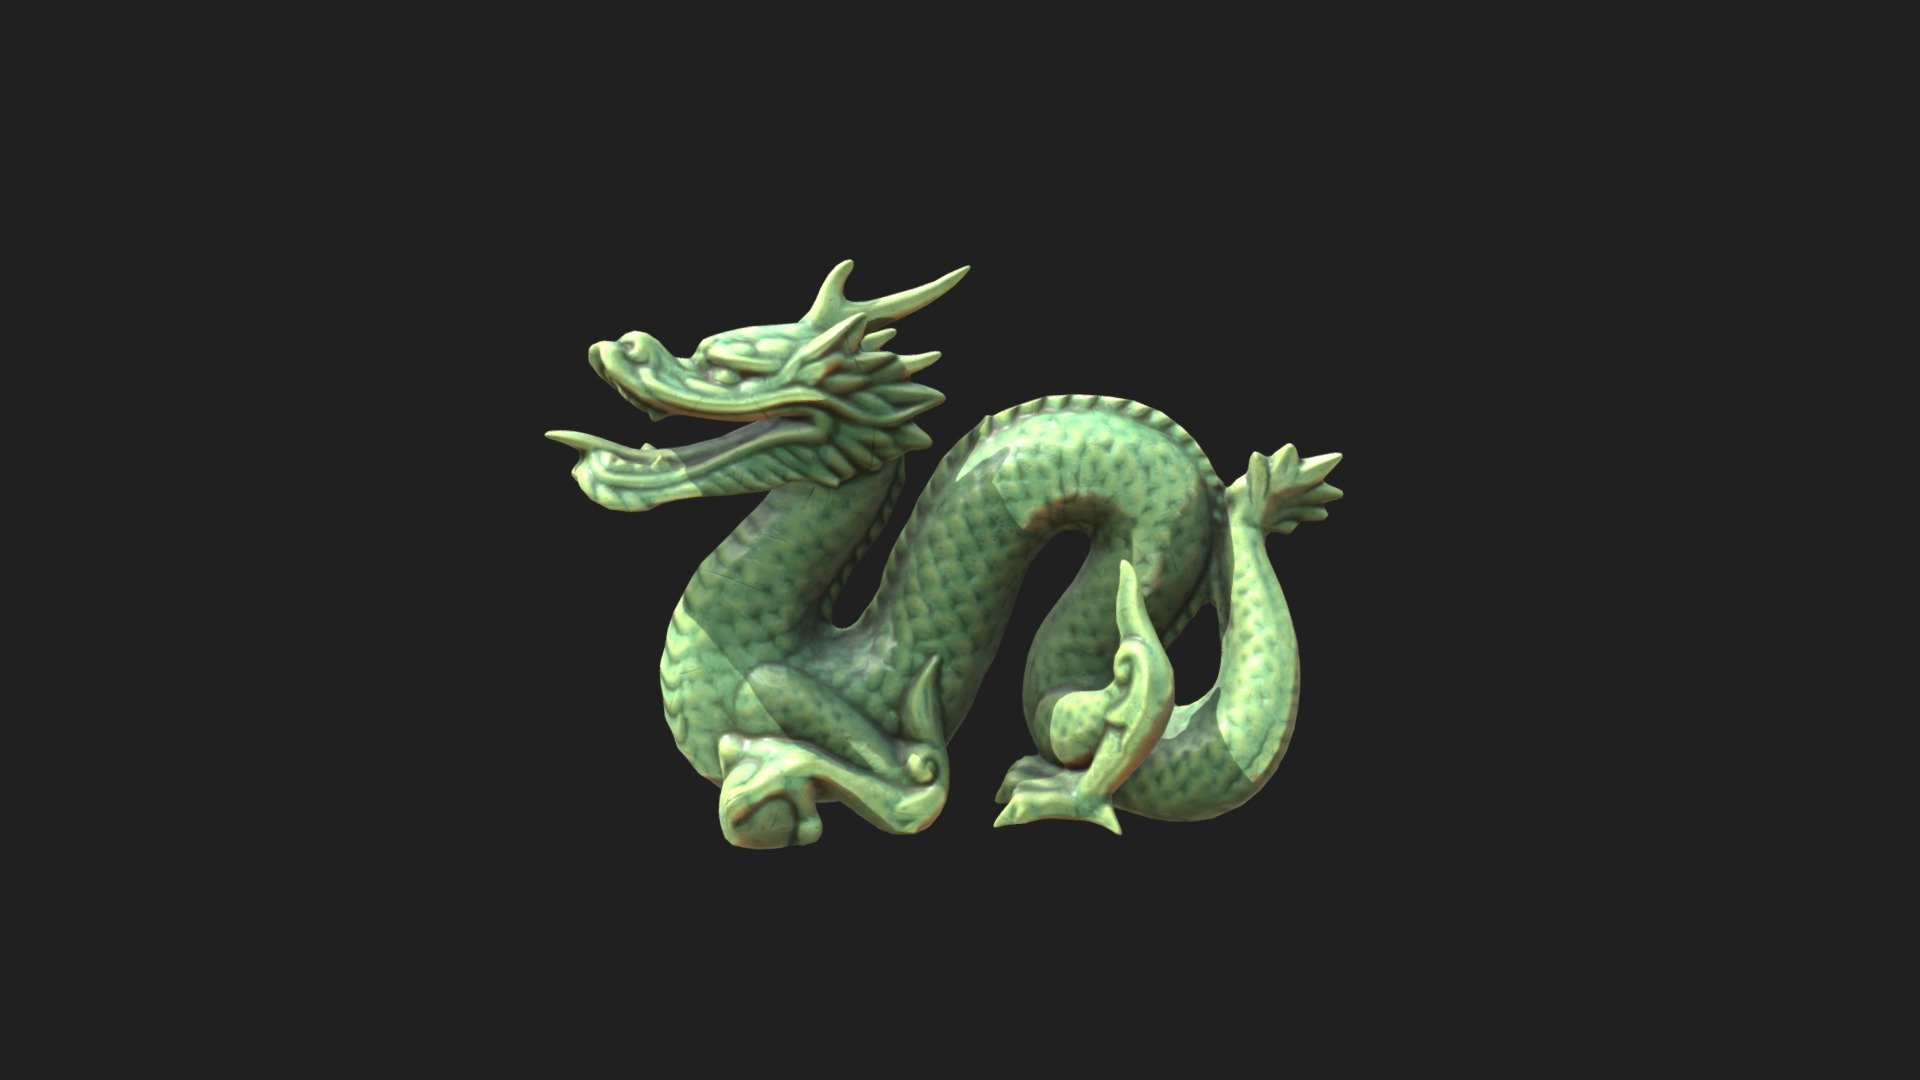 Esfera do dragão modelo 3D gratuito - .c4d - Free3D